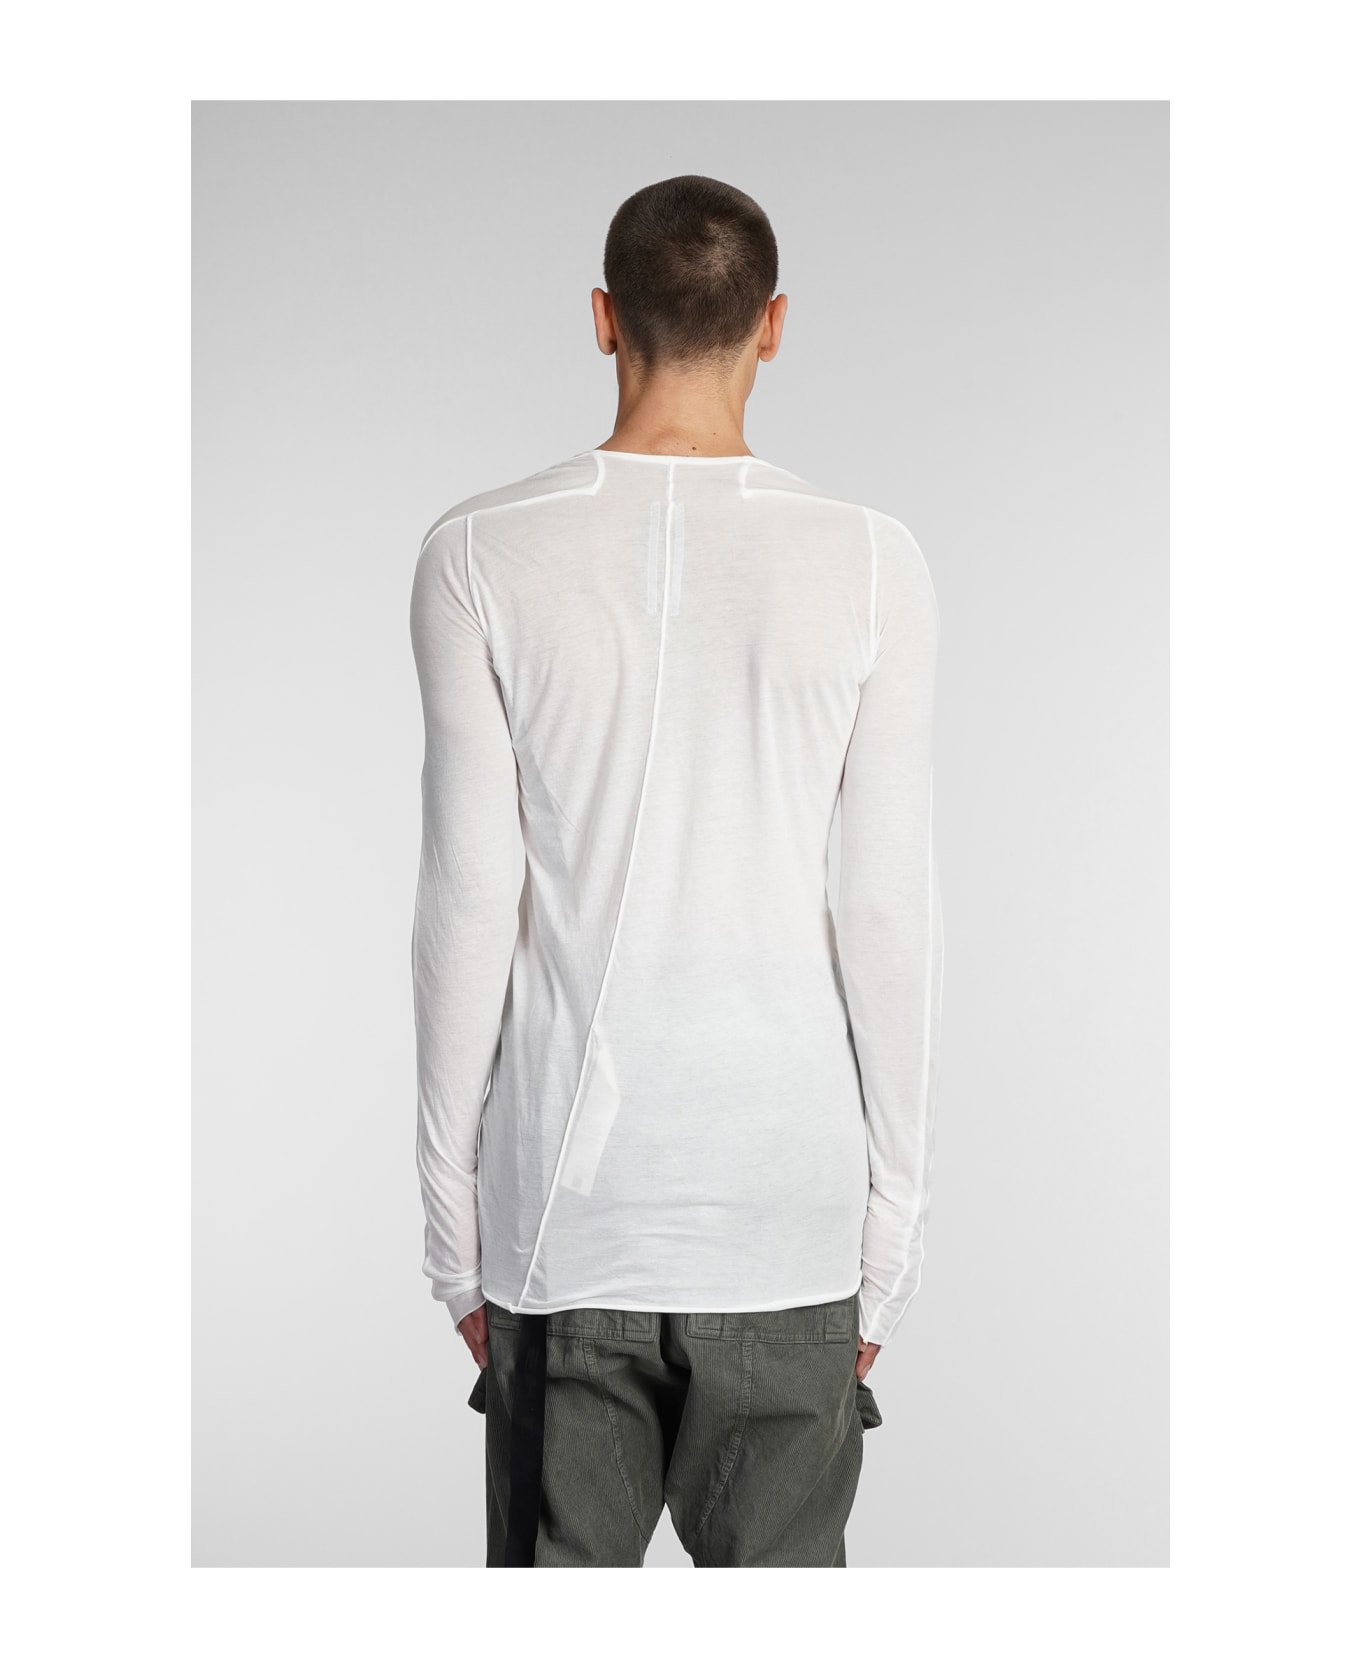 DRKSHDW Long Sleeve T-shirt - White シャツ